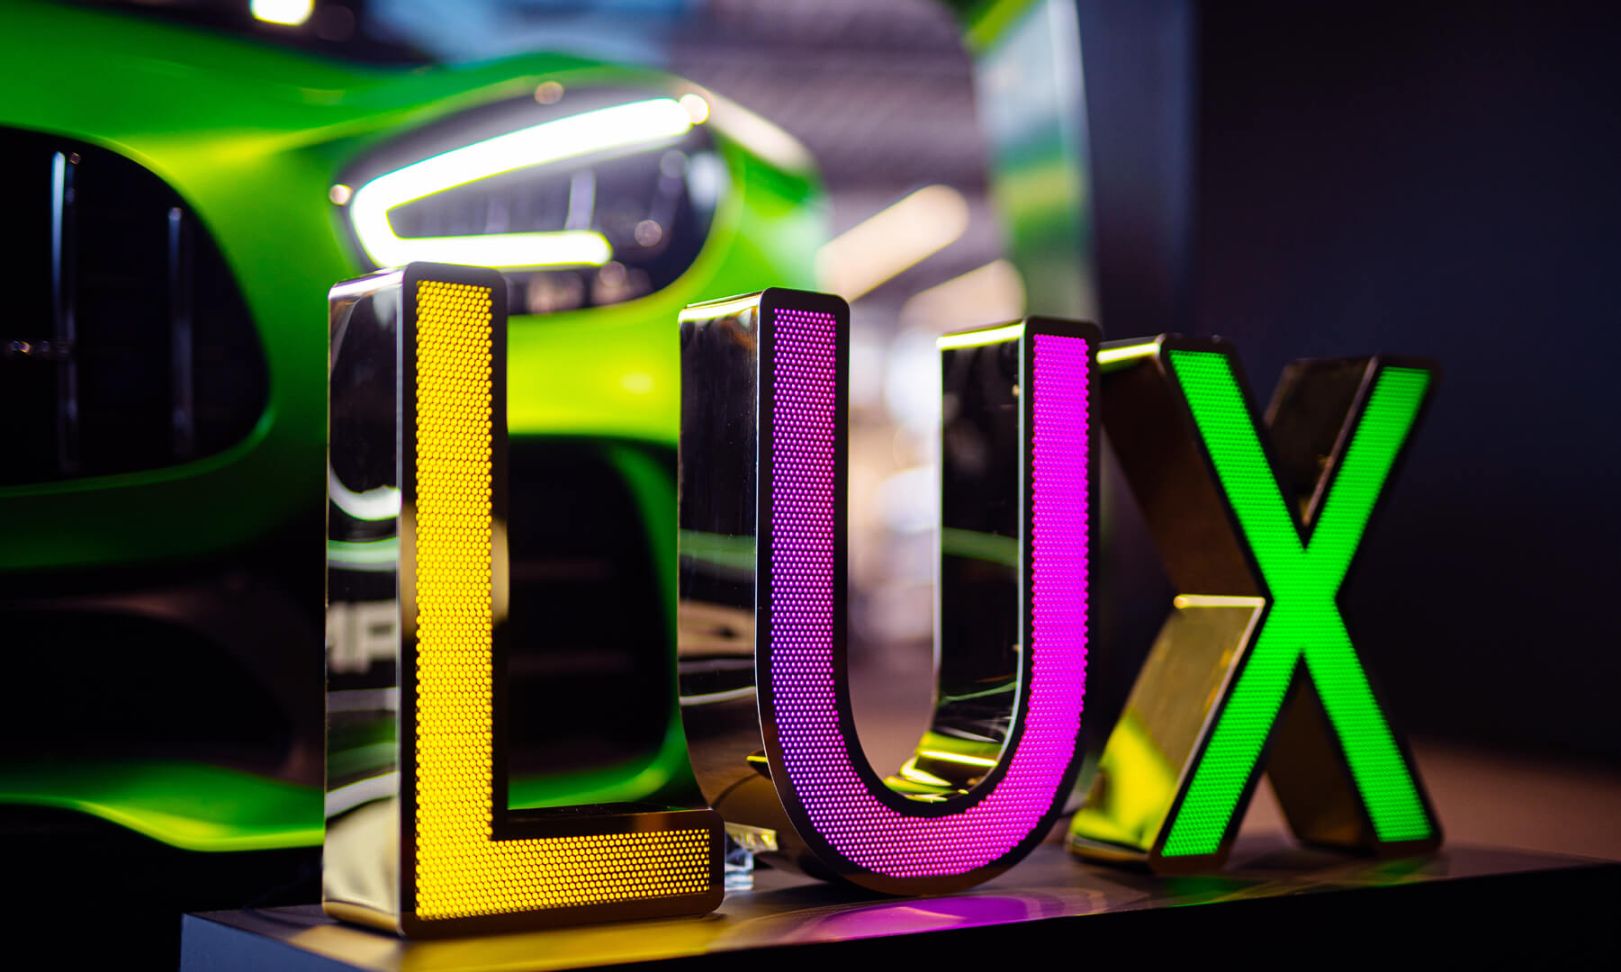 Lettres en acier inoxydable perforé LUX - Lettrage LUX en acier inoxydable perforé, éclairé par LED en trois couleurs, sur fond Mercedes